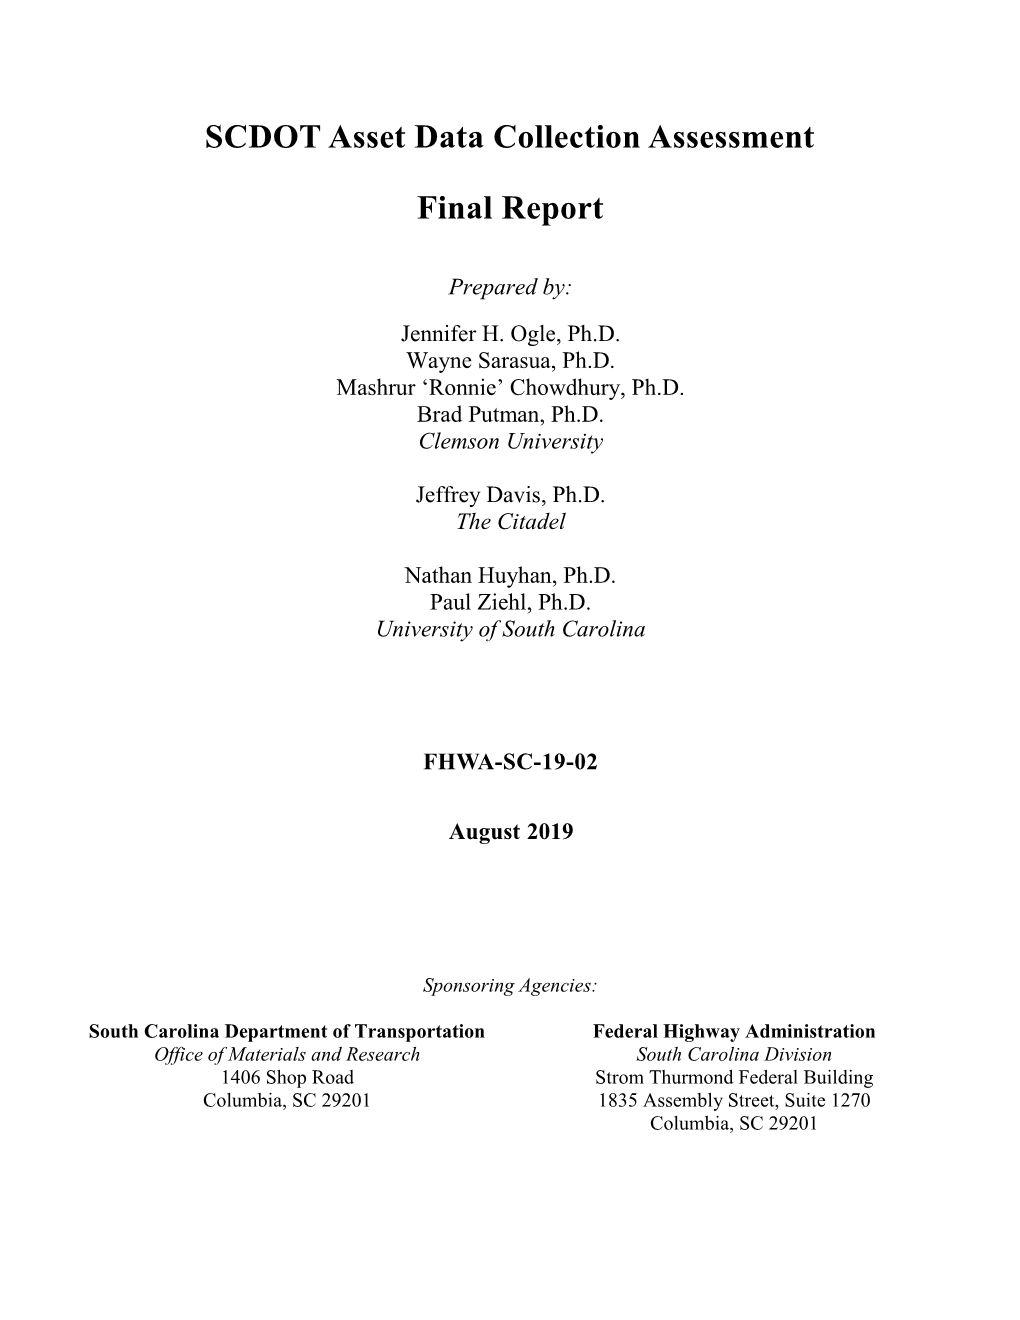 SCDOT Asset Data Collection Assessment Final Report